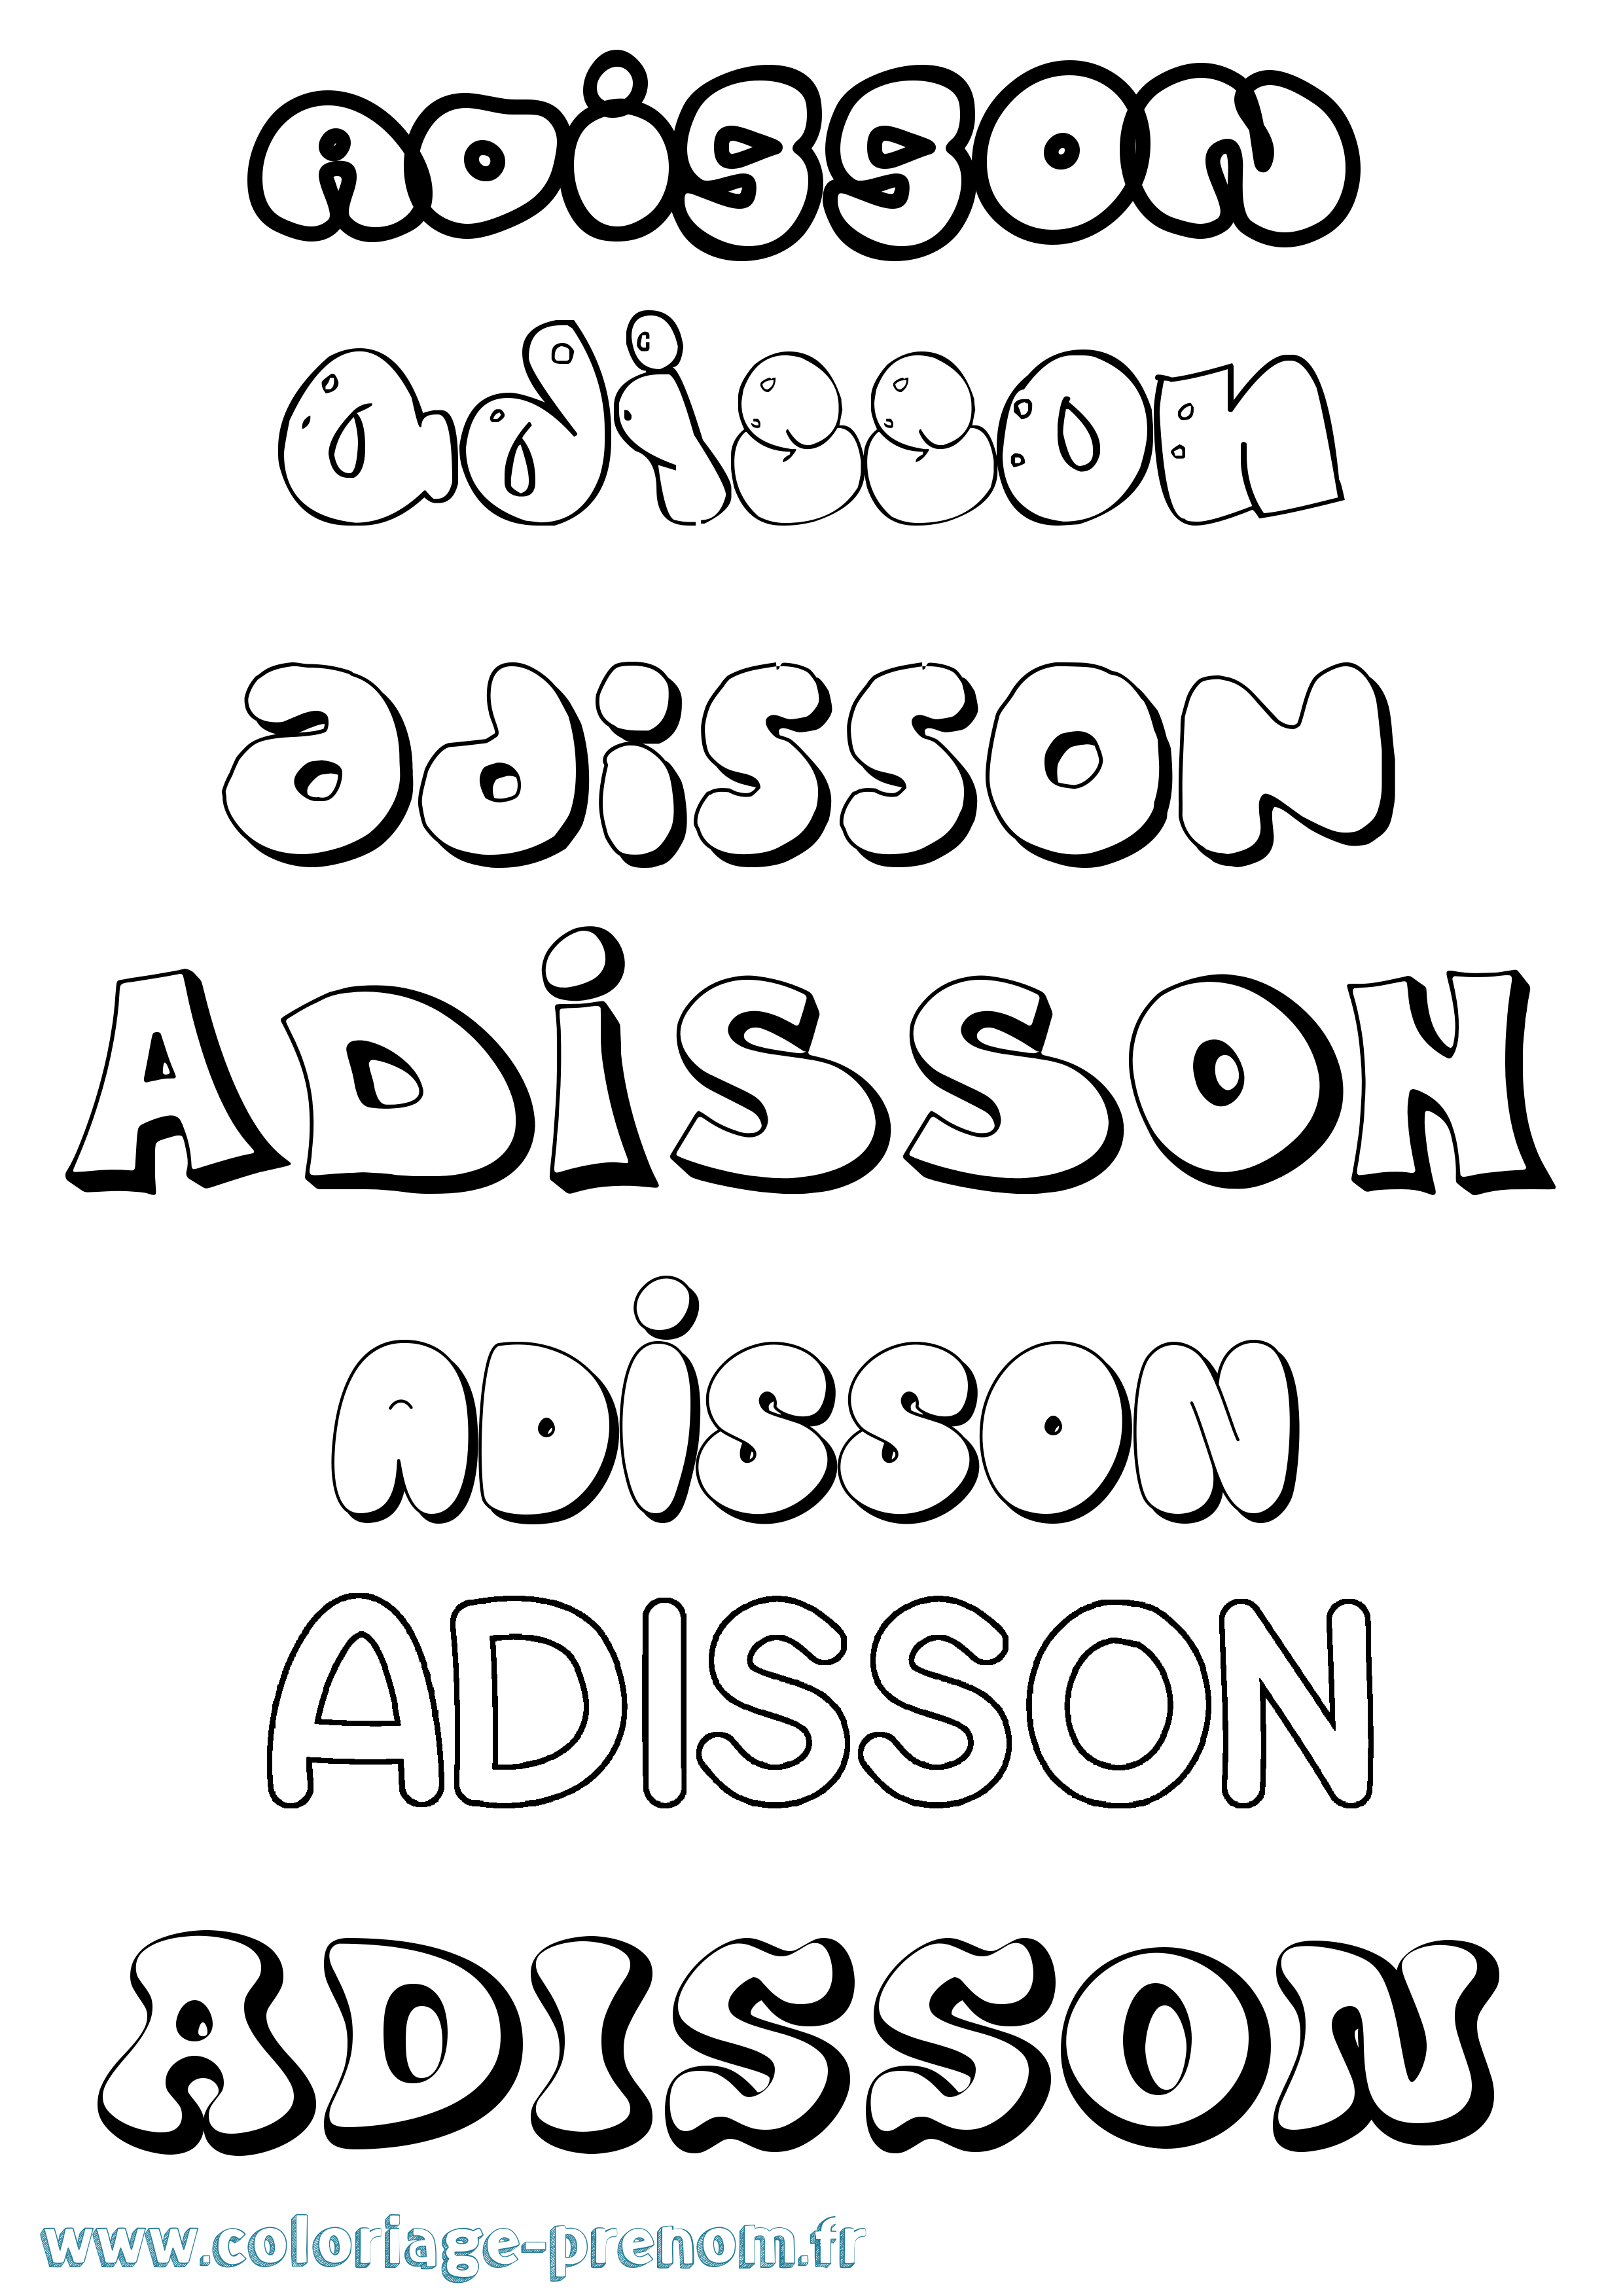 Coloriage prénom Adisson Bubble